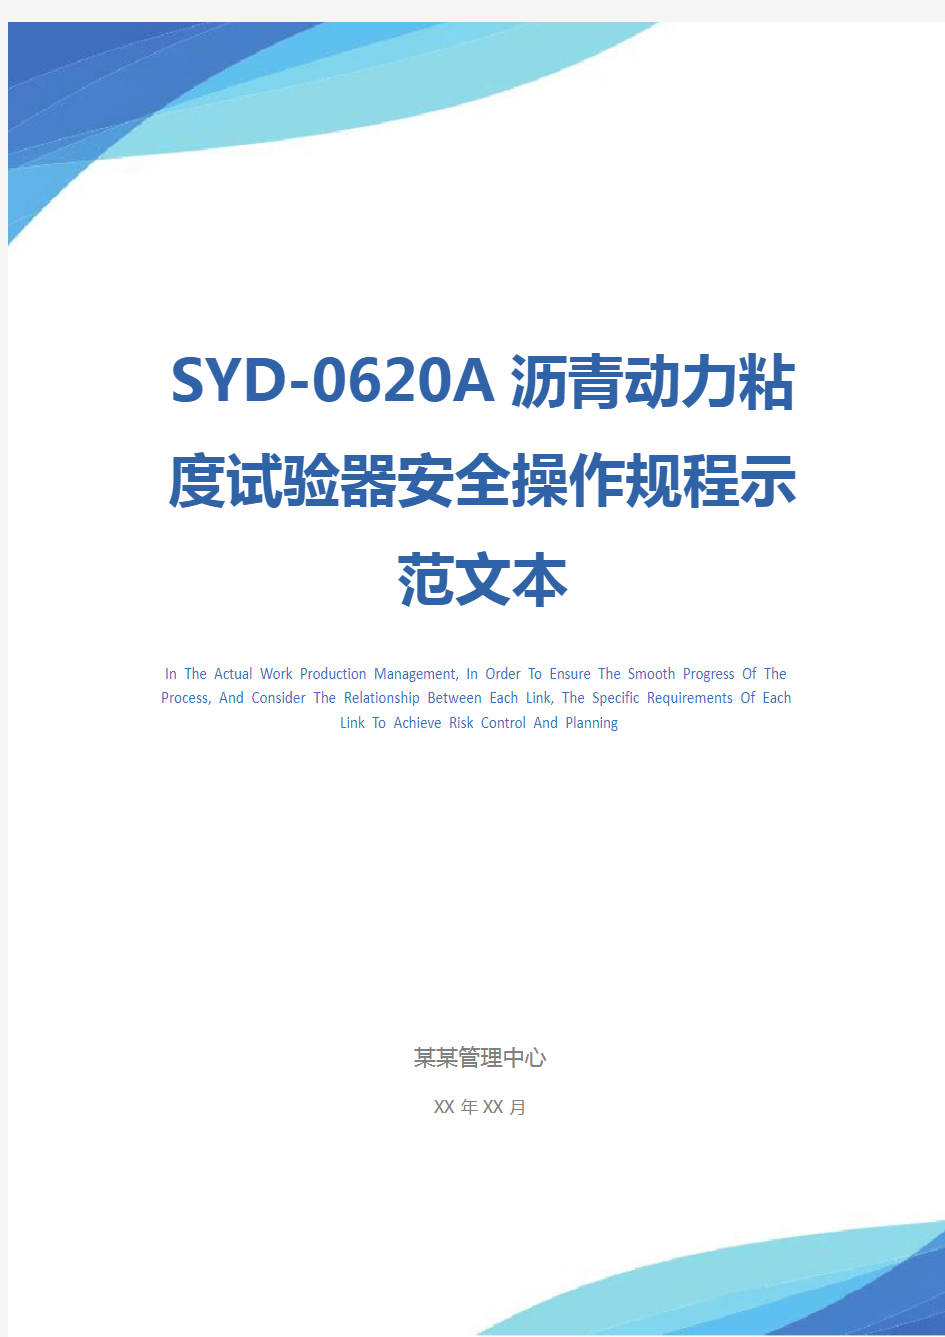 SYD-0620A沥青动力粘度试验器安全操作规程示范文本